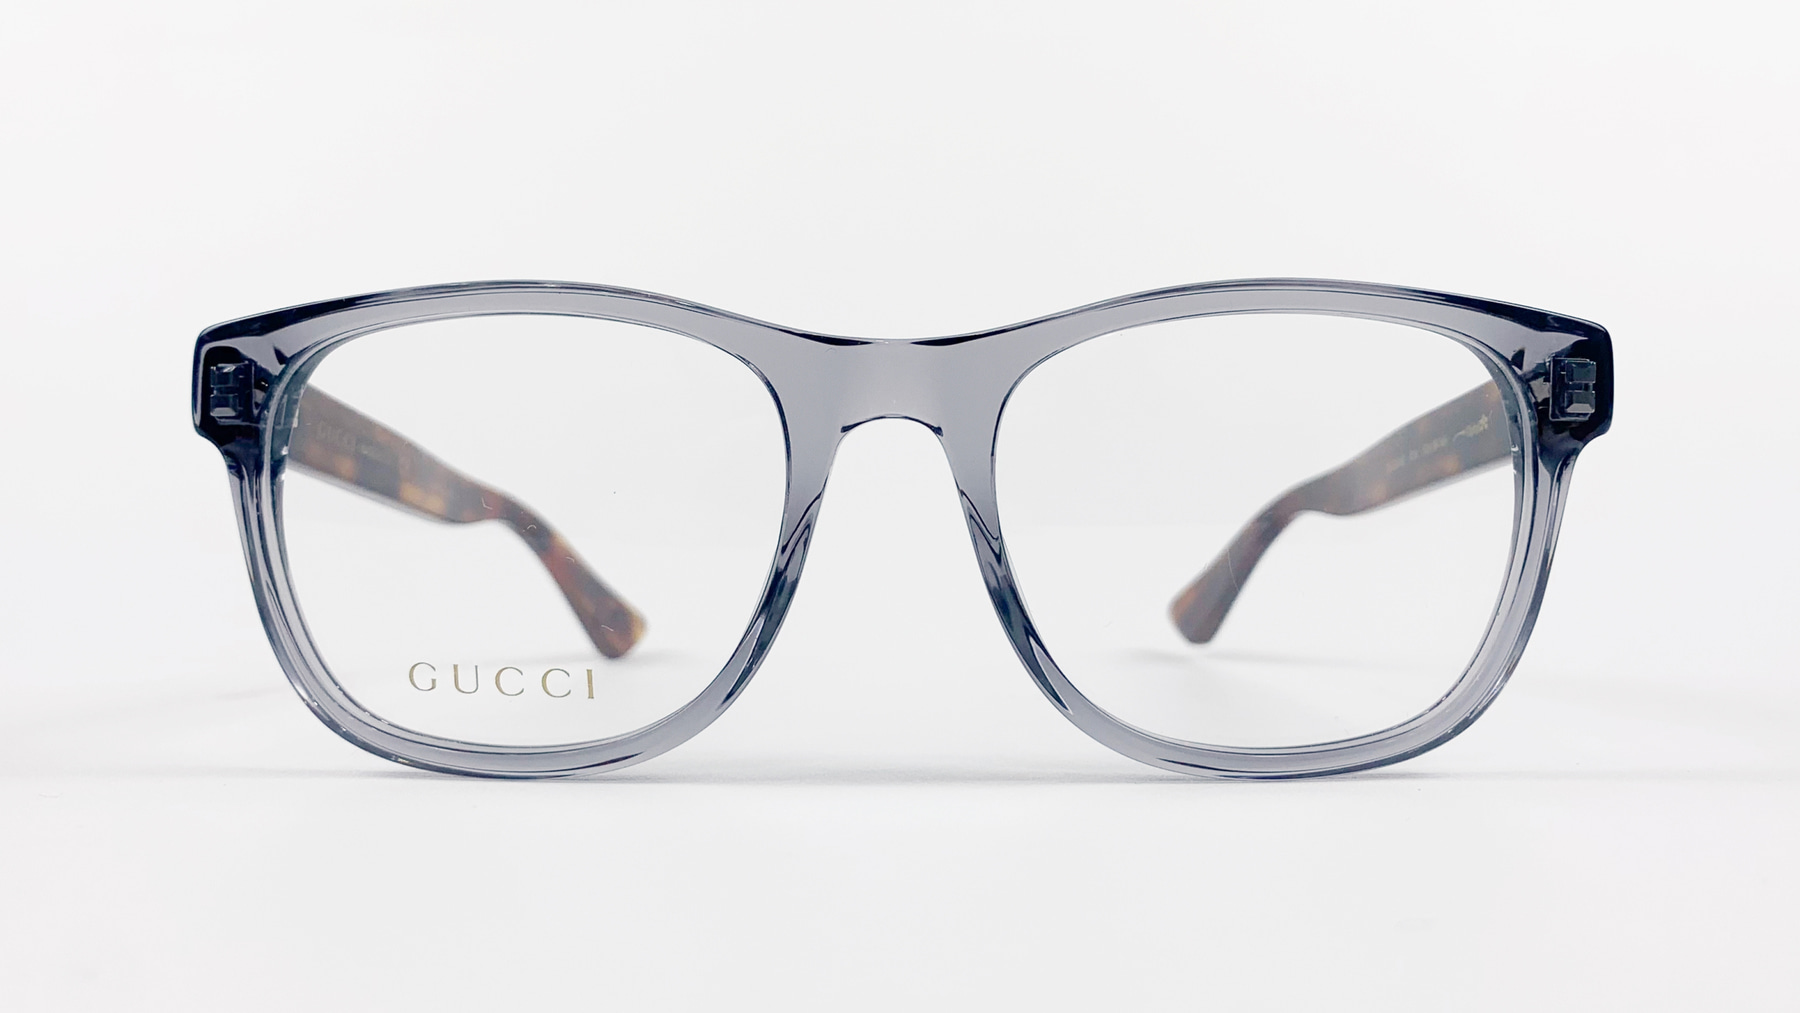 GUCCI GG0004O, Korean glasses, sunglasses, eyeglasses, glasses